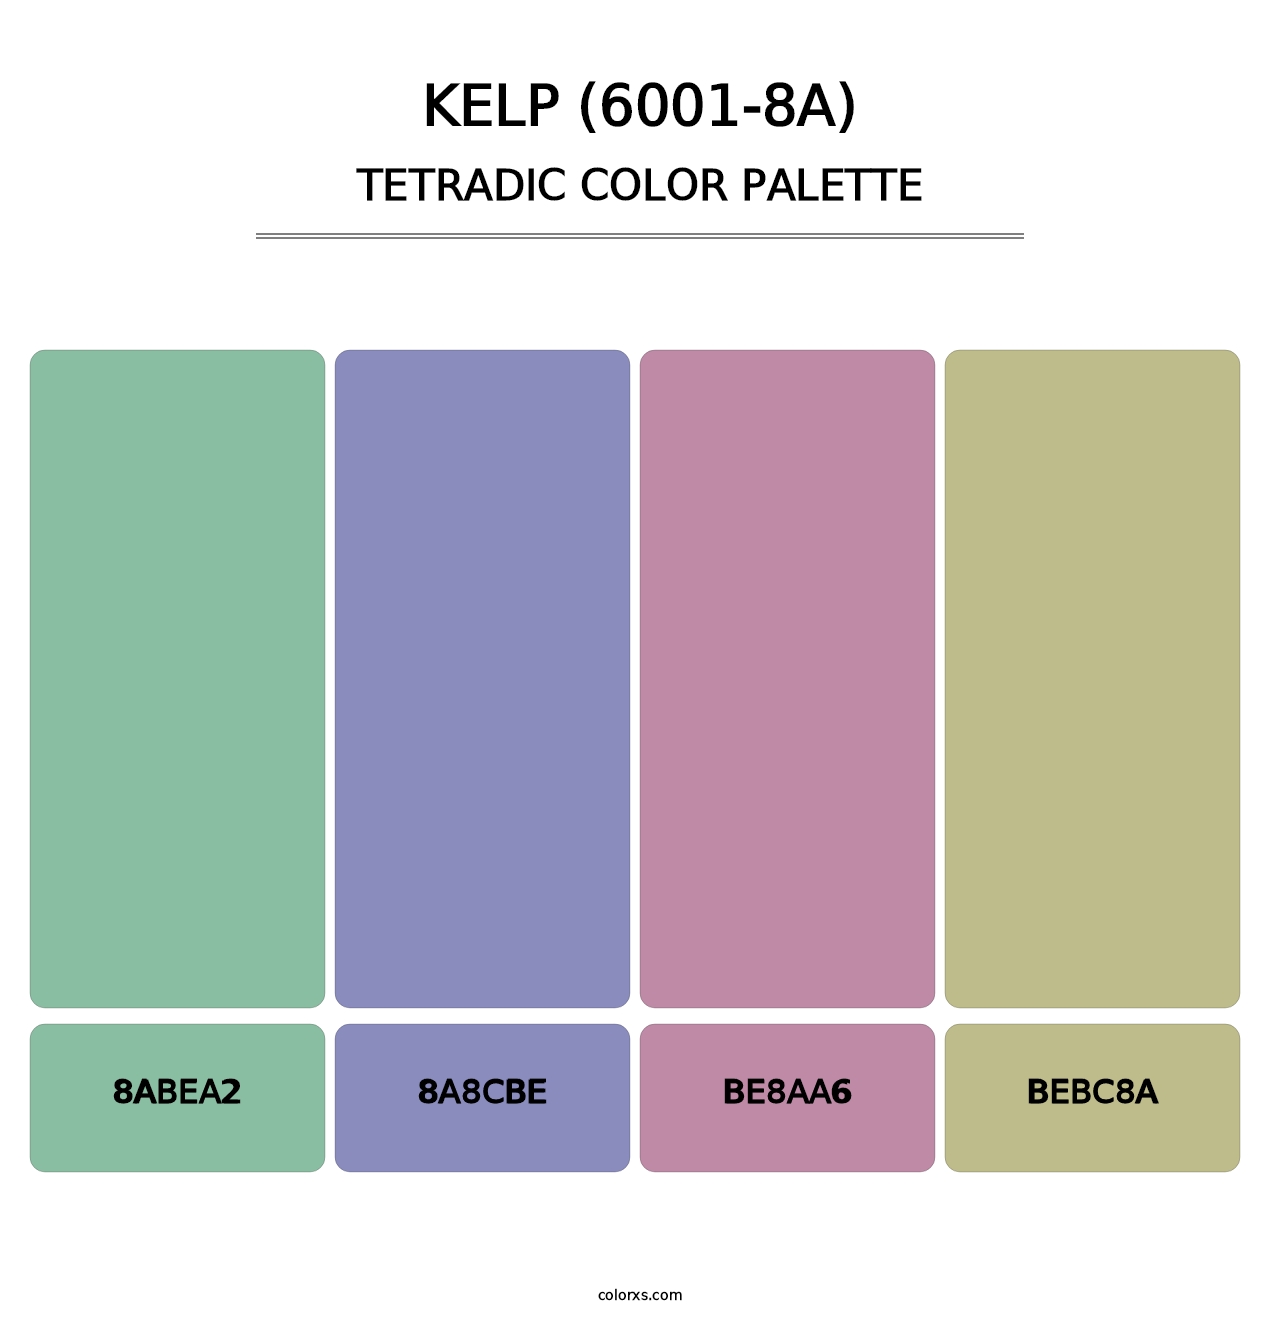 Kelp (6001-8A) - Tetradic Color Palette